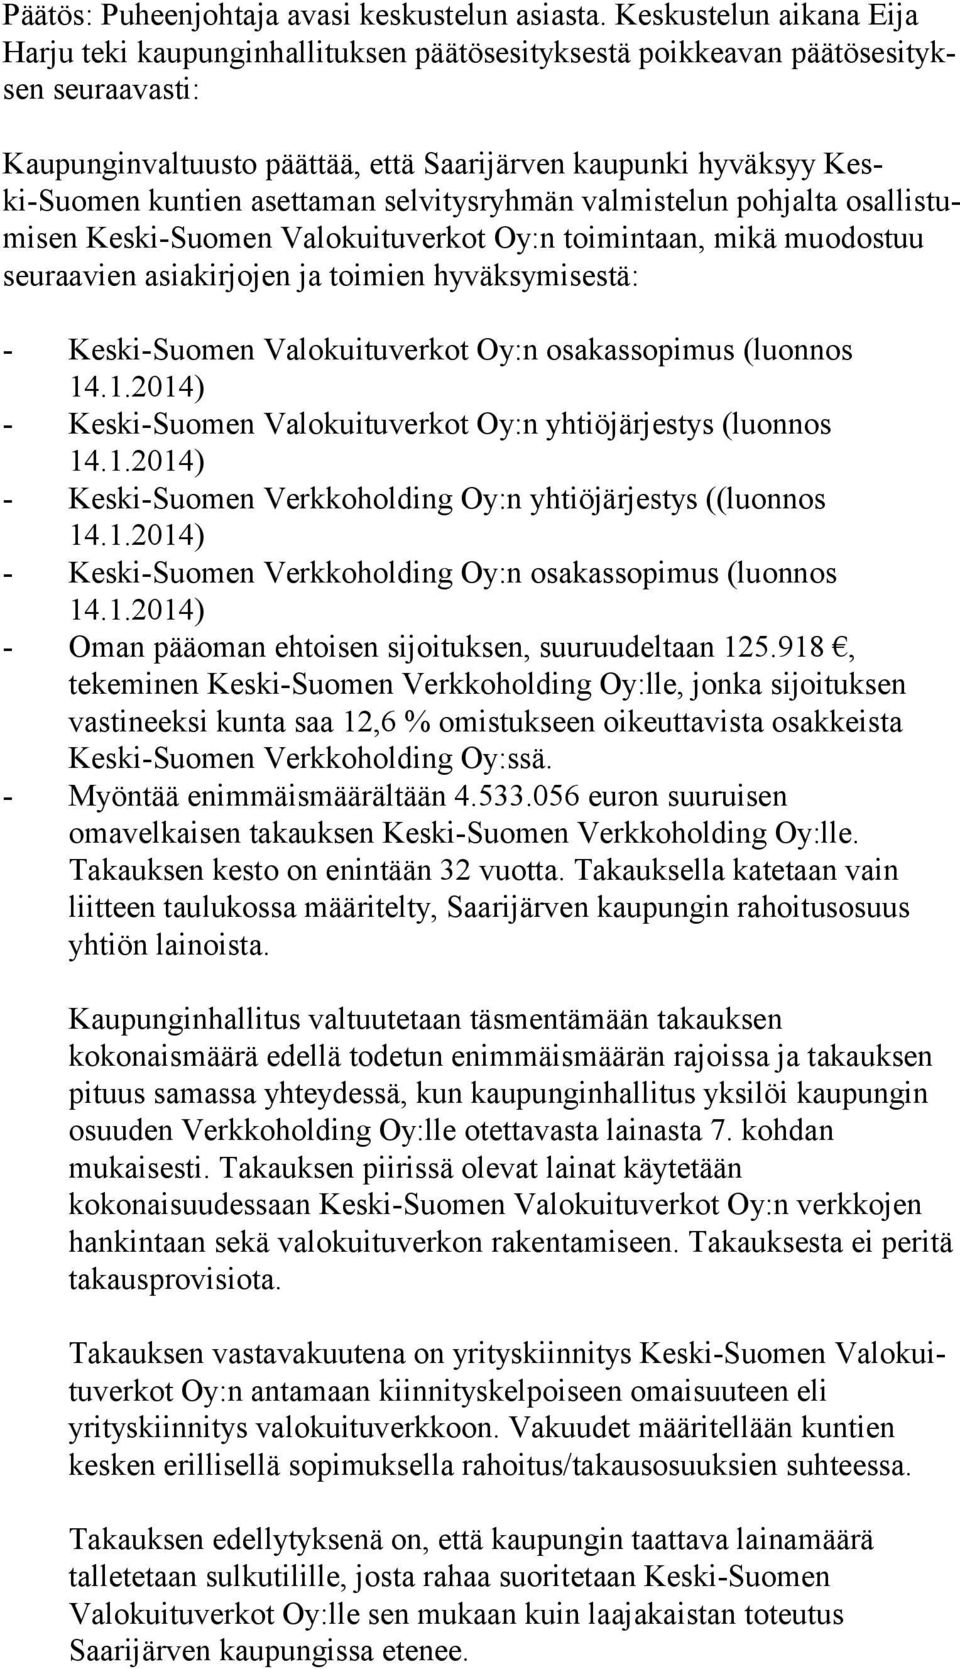 kuntien asettaman selvitysryhmän valmistelun pohjalta osal lis tumi sen Keski-Suomen Valokuituverkot Oy:n toimintaan, mikä muodostuu seu raa vien asiakirjojen ja toimien hyväksymisestä: -